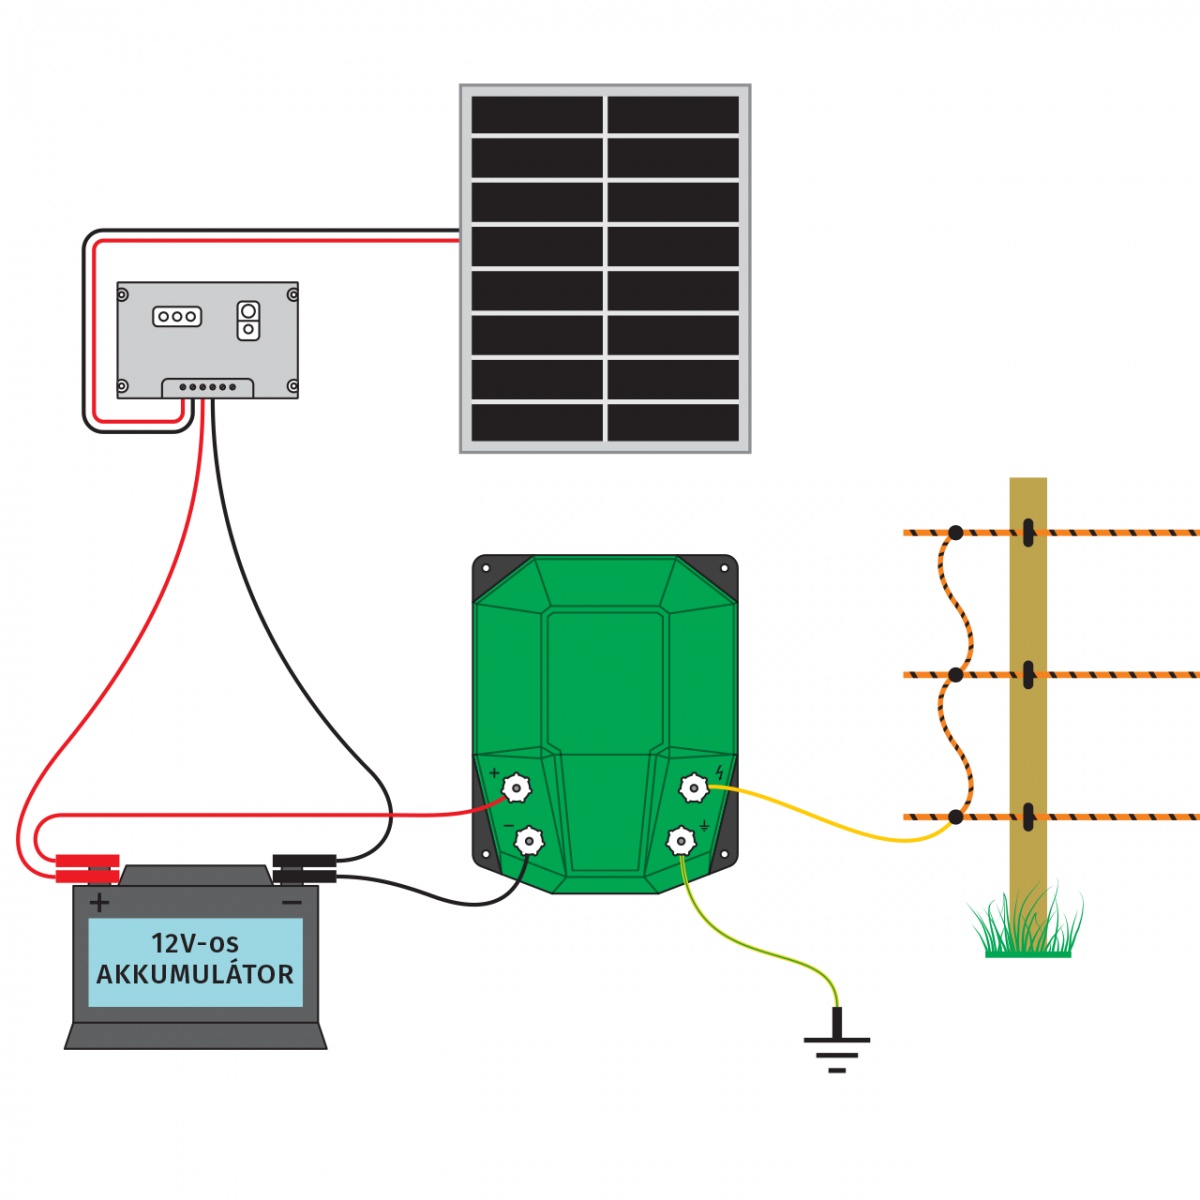 DL 10000 villanypásztor készülék, 12 V, 10 Joule, 100 W-os napelemes rendszerrel